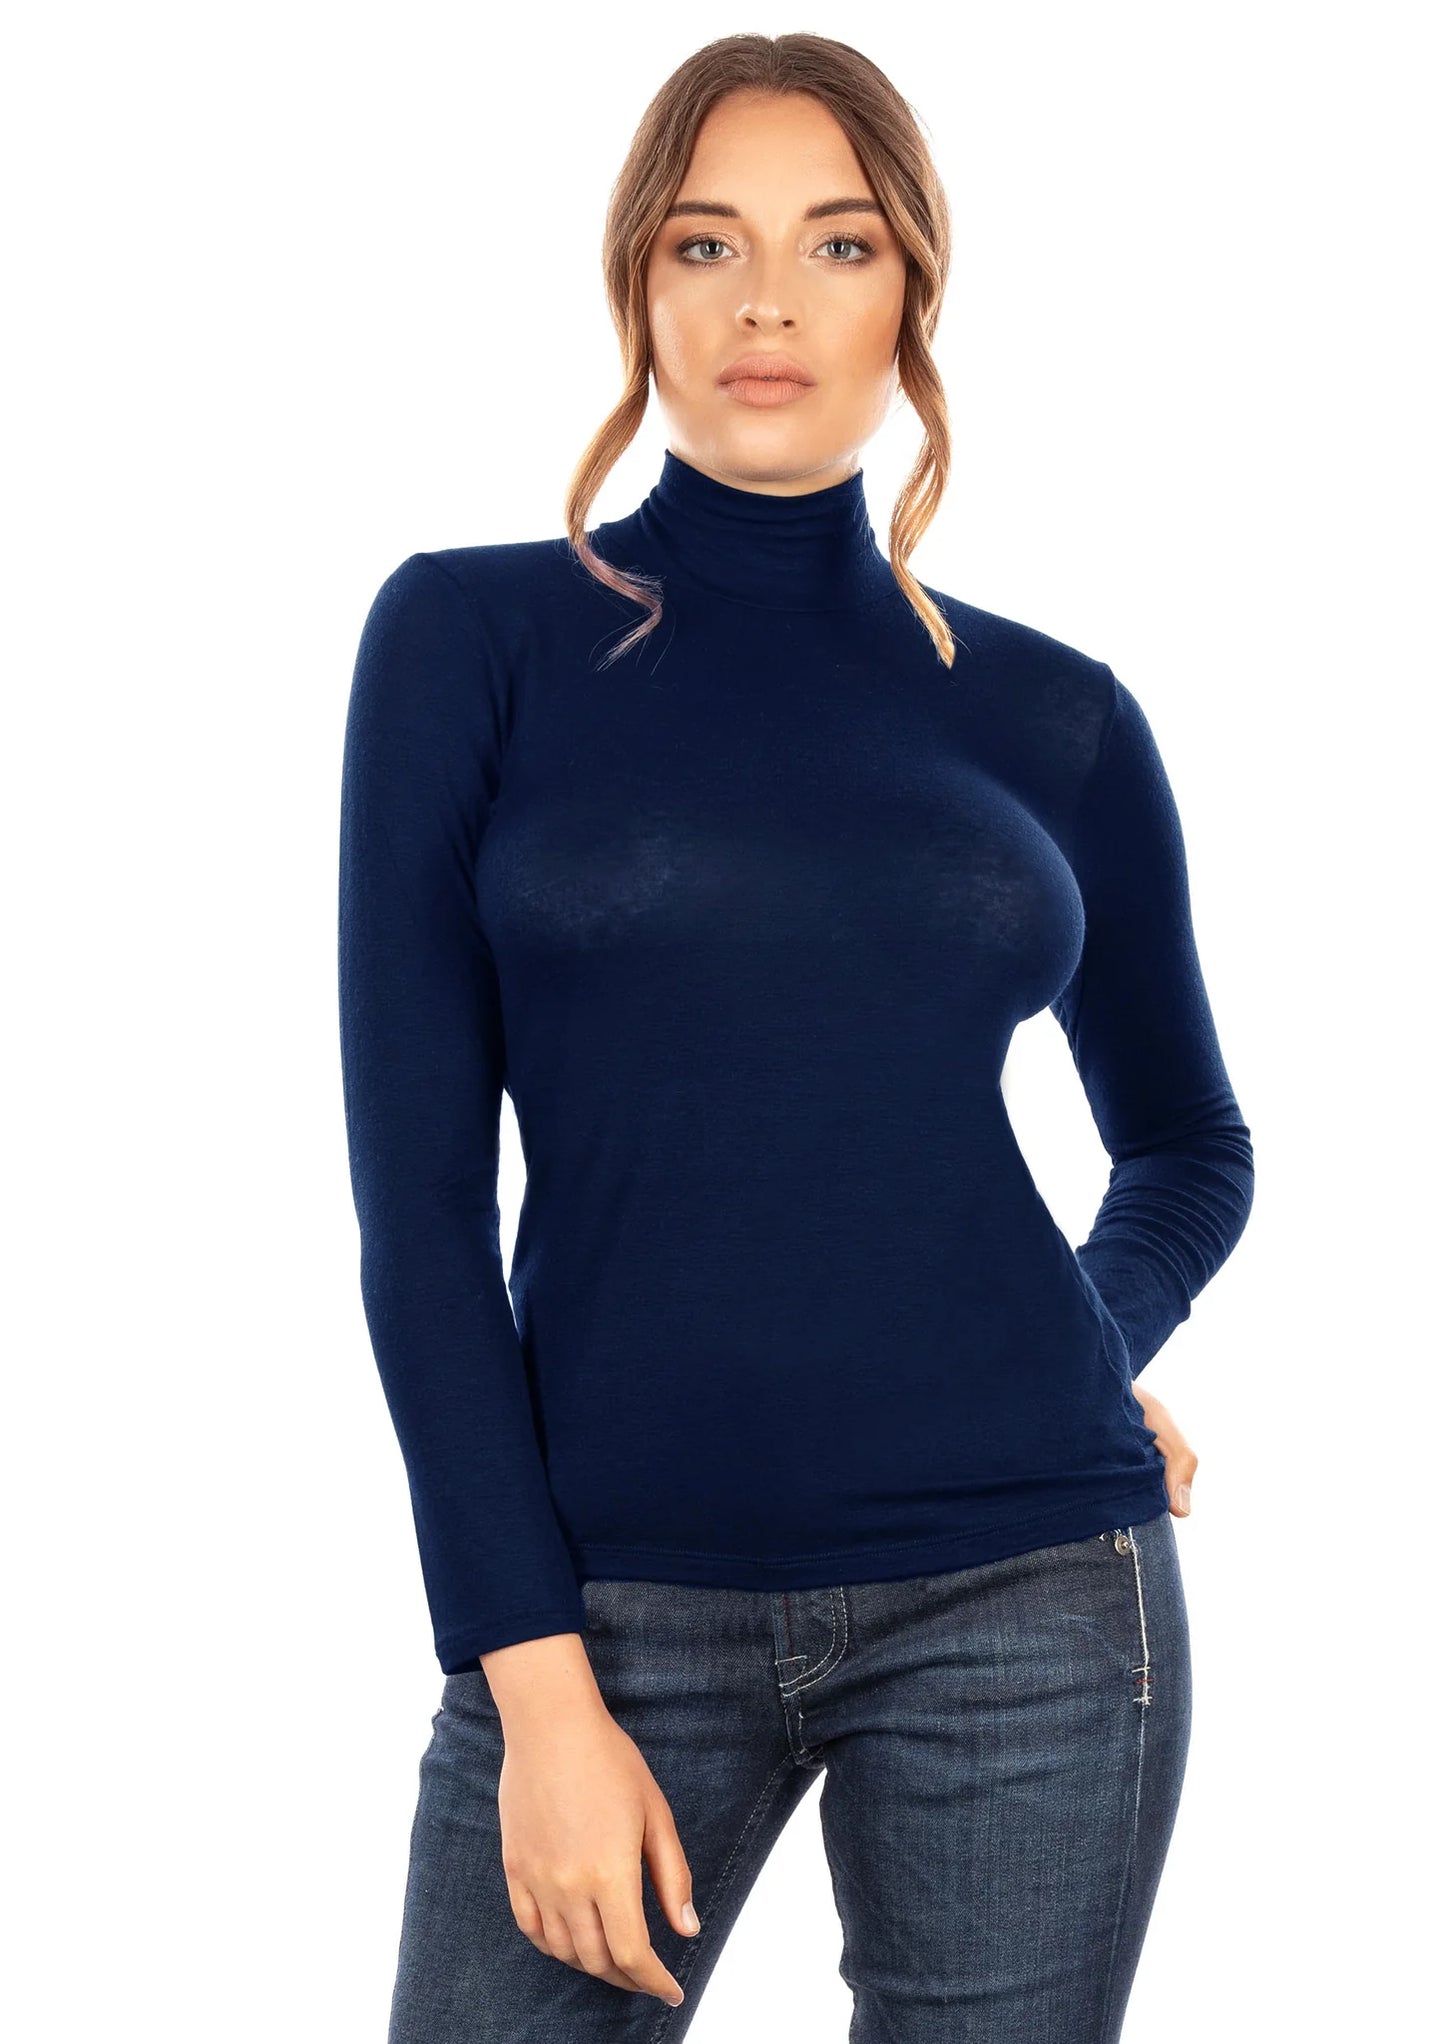 Jersey de mujer de cuello alto y manga larga en Modal y Cashmere ultraligero - Made in Italy - 5249